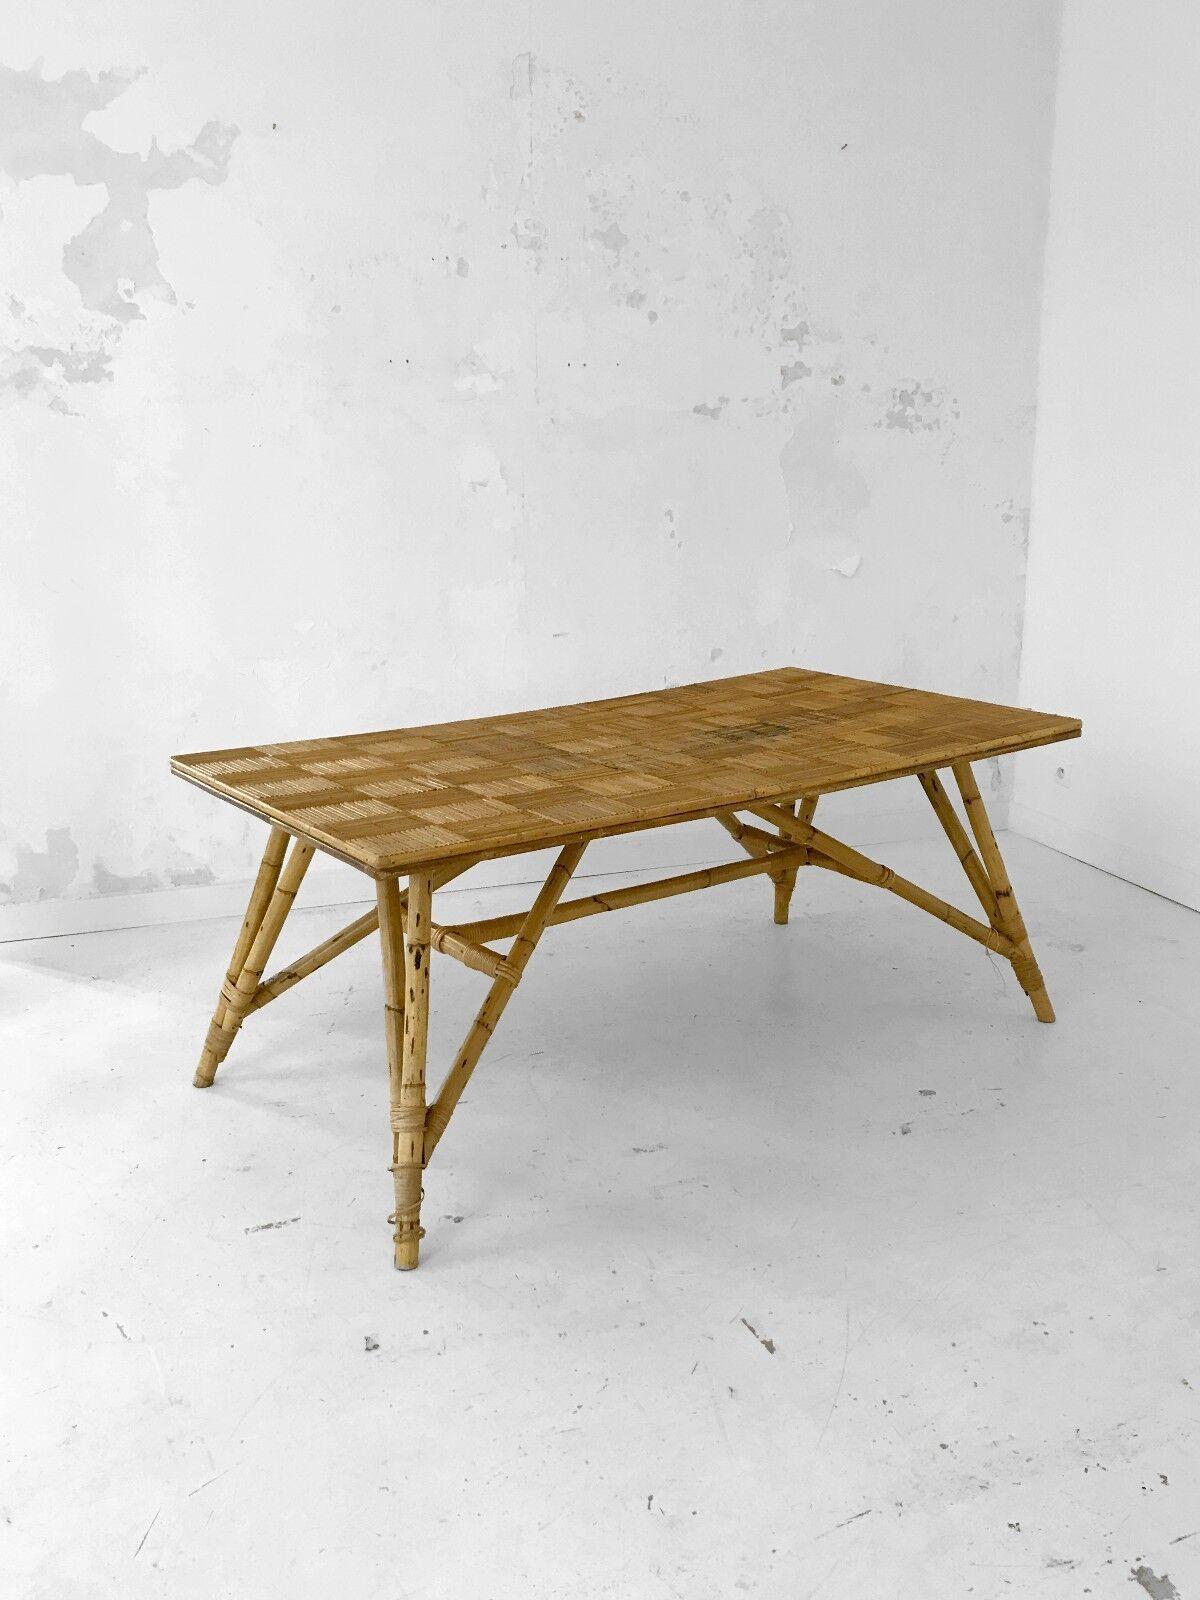 Une table de salle à manger spectaculaire, moderniste, constructiviste, de forme libre, structure en bambou aux lignes dynamiques, grand plateau en bois incrusté de damiers en osier, par Audoux-Minnet, France 1970.
Un modèle exceptionnel, par son